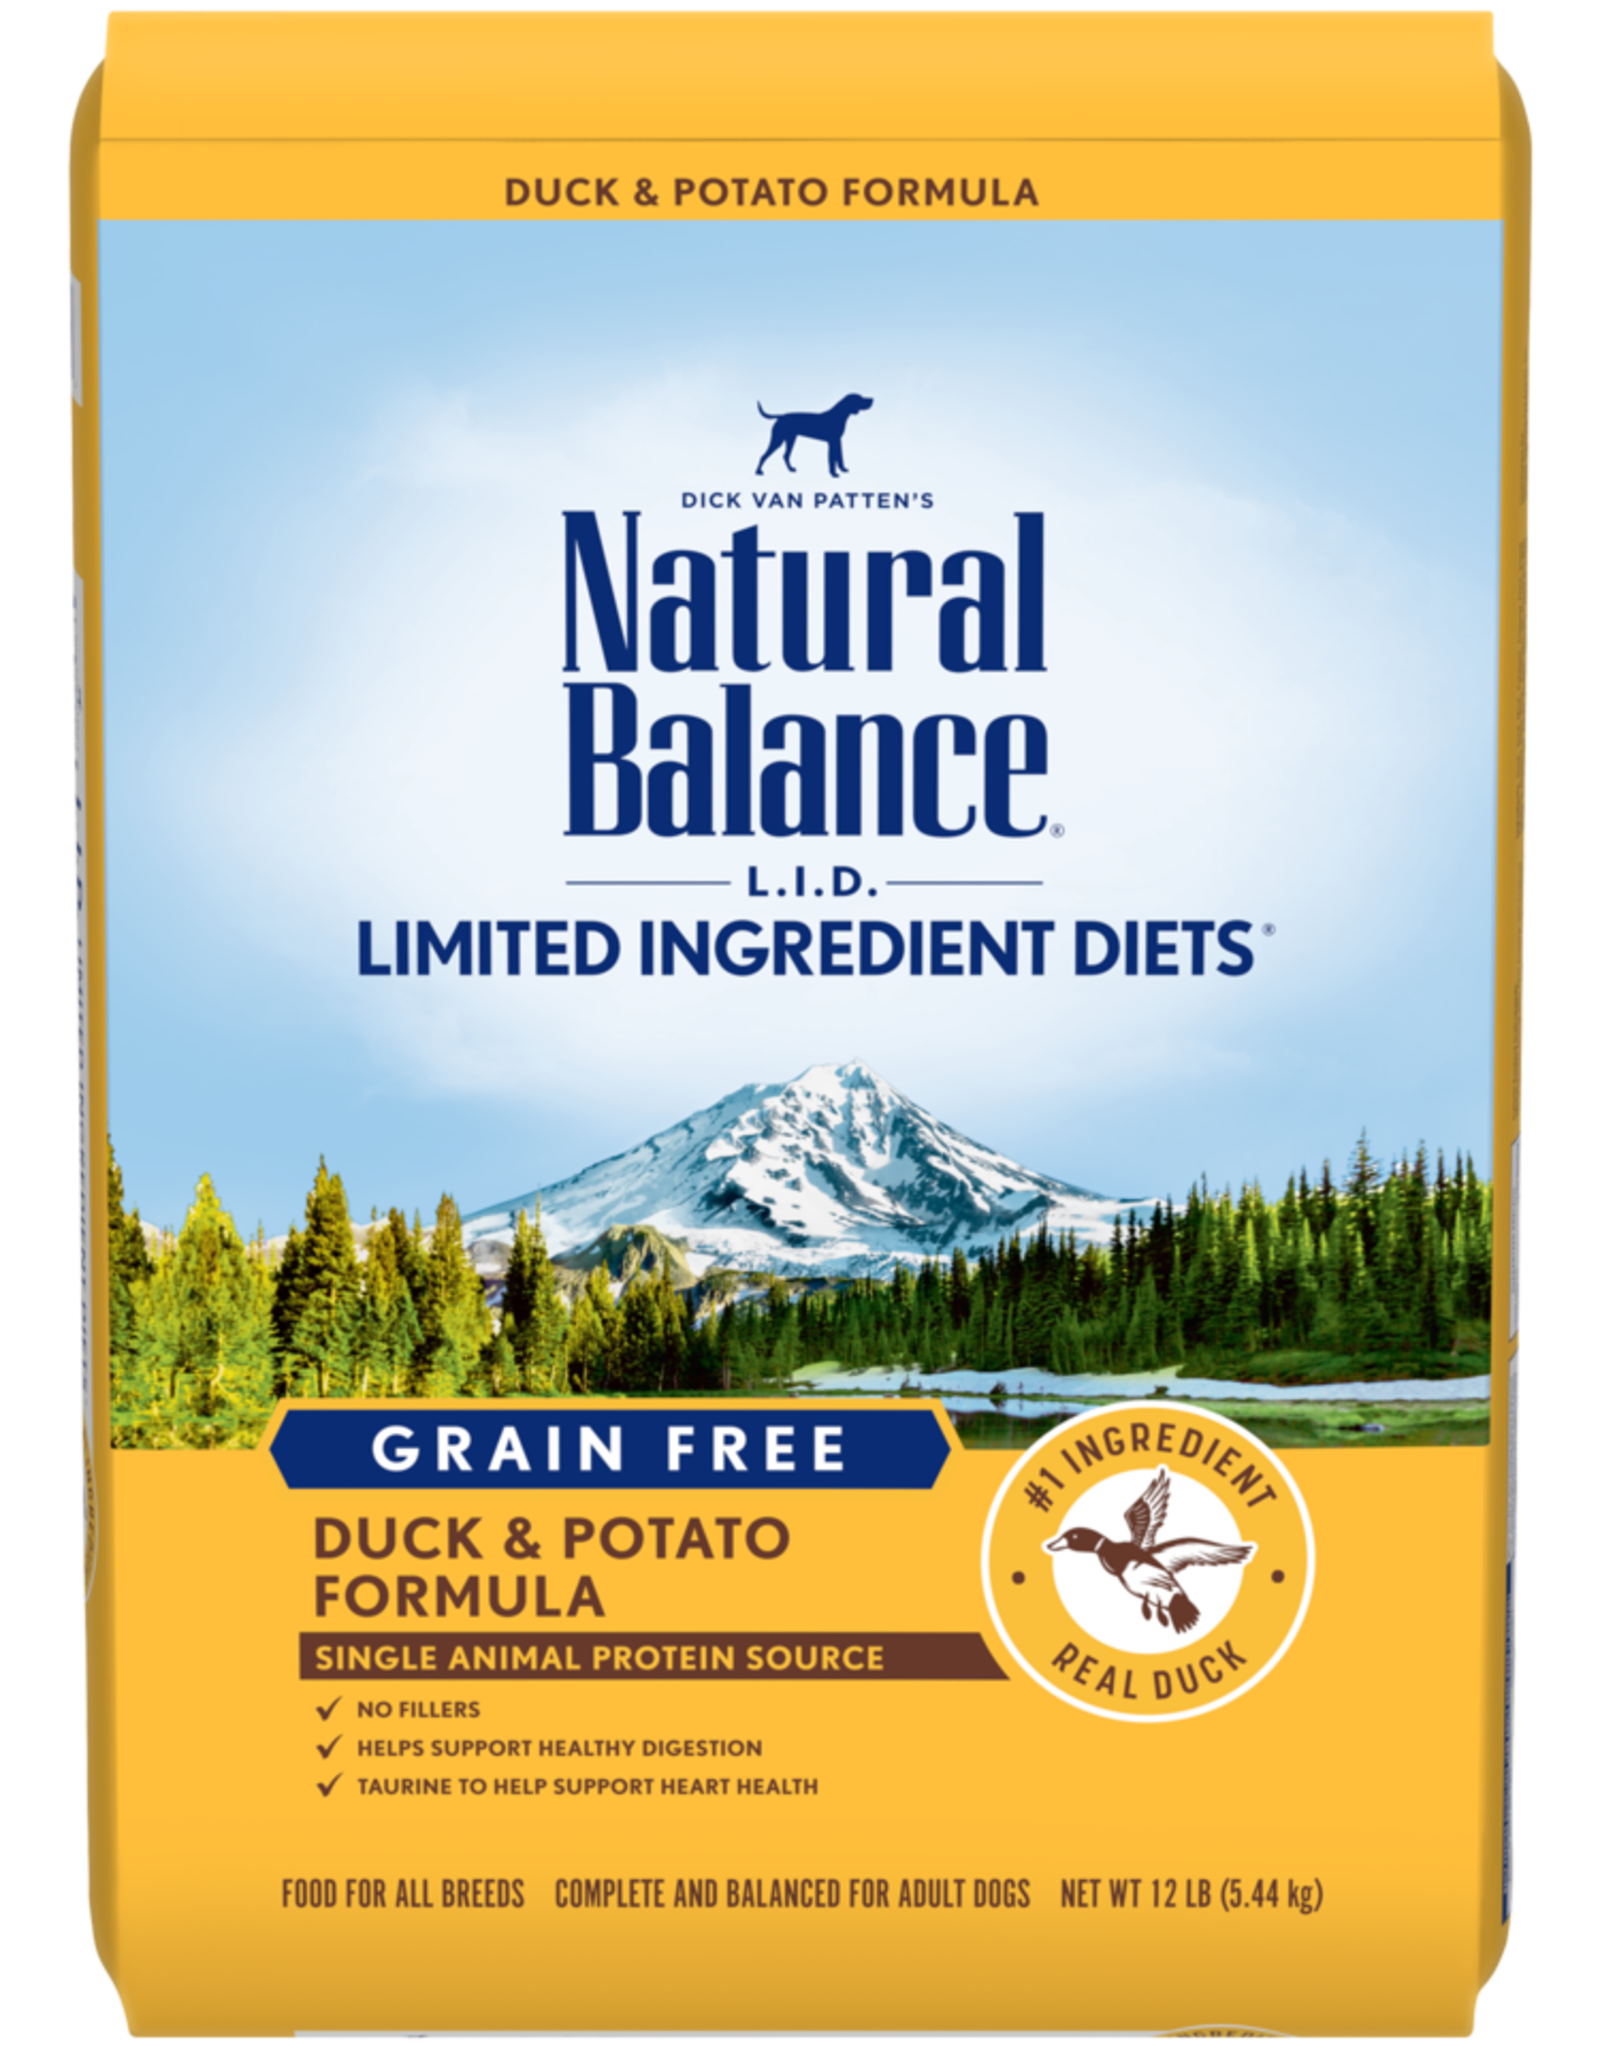 NATURAL BALANCE PET FOODS, INC NATURAL BALANCE DOG GRAIN FREE LID POTATO & DUCK 4LBS